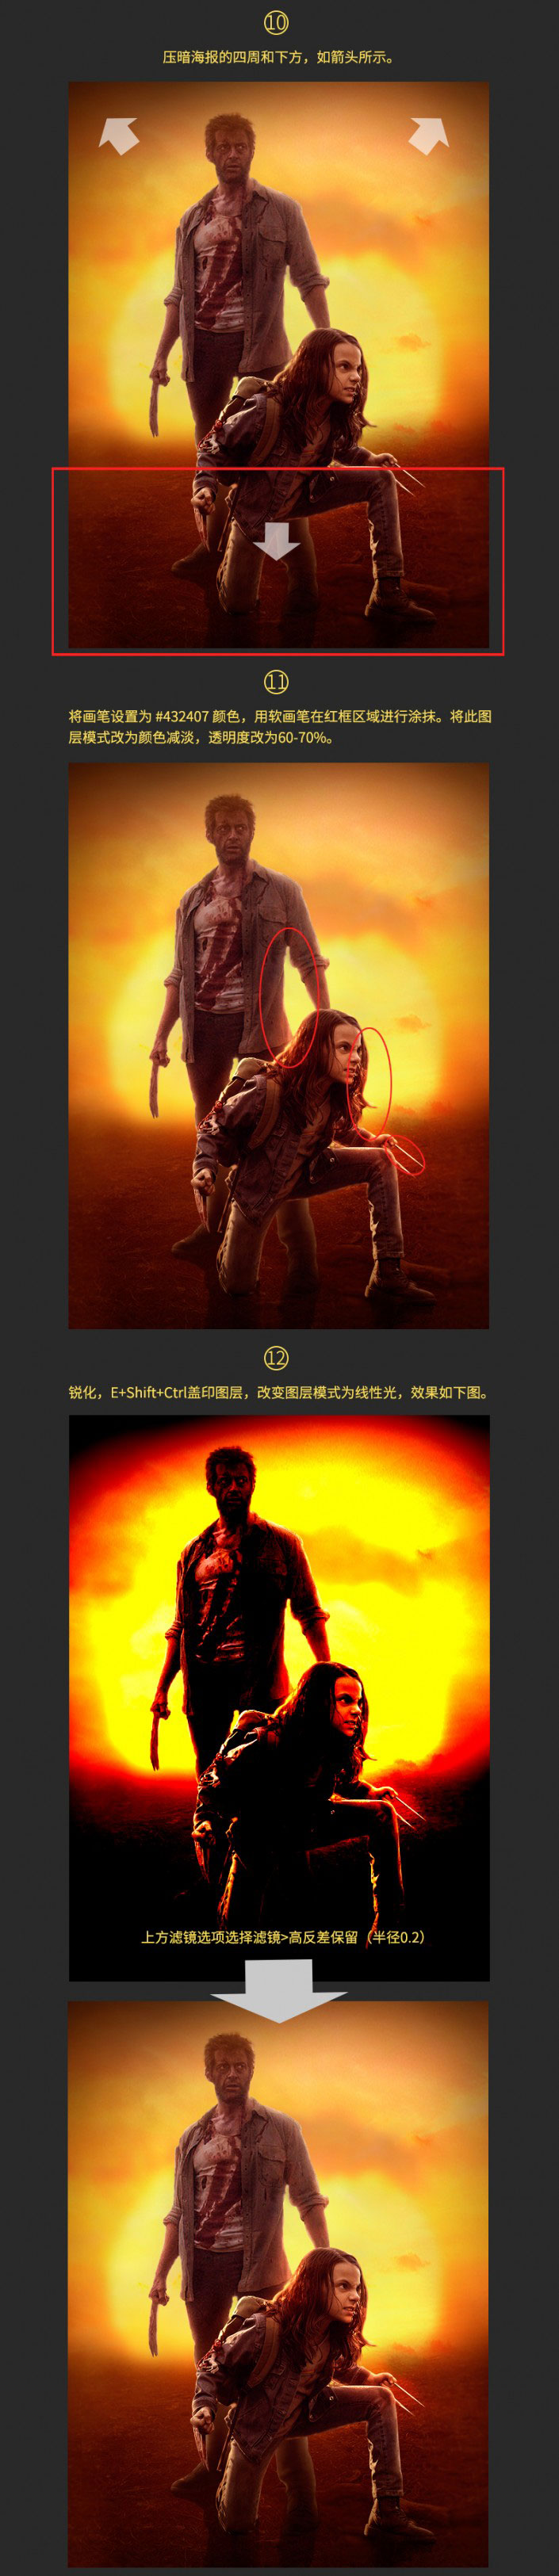 海报设计，合成《金刚狼3》的海报效果